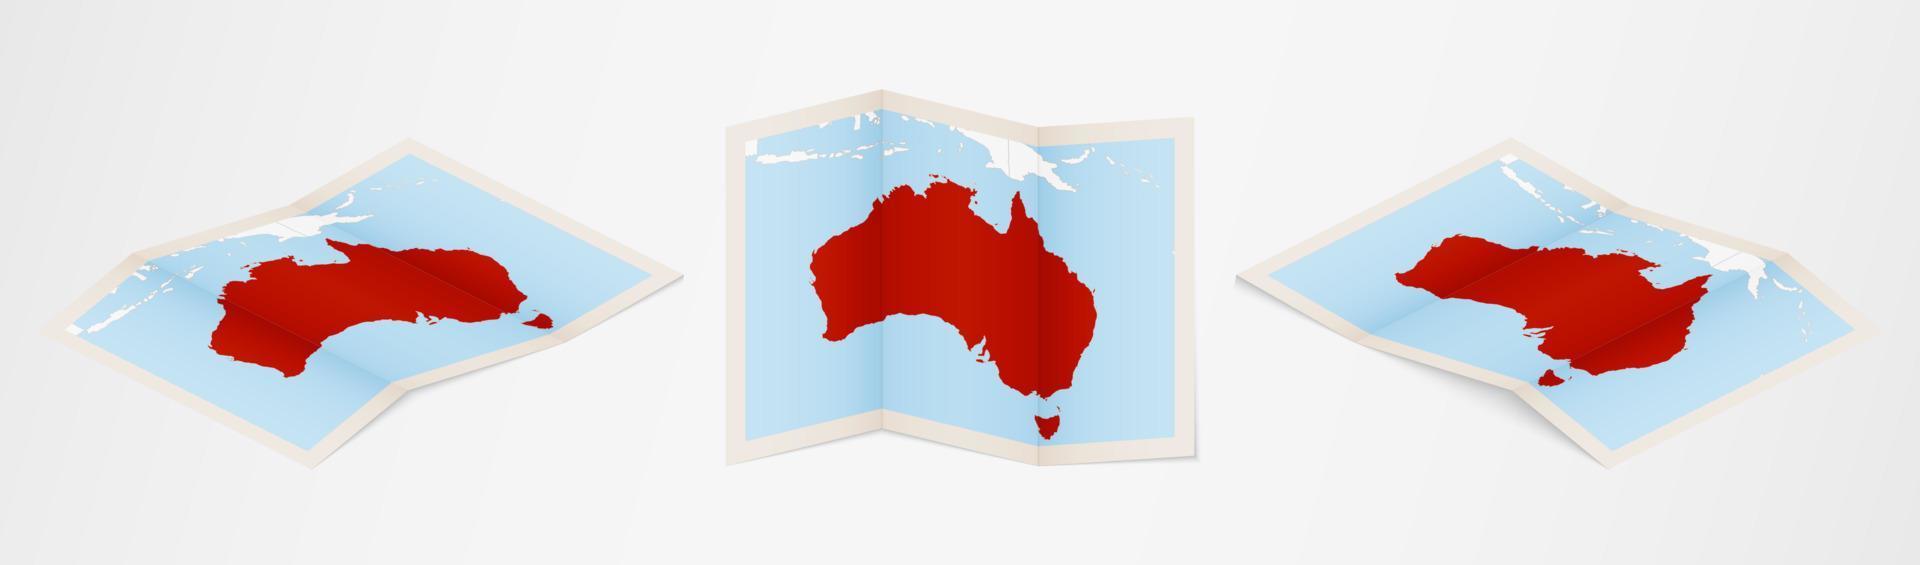 Faltkarte von Australien in drei verschiedenen Versionen. vektor